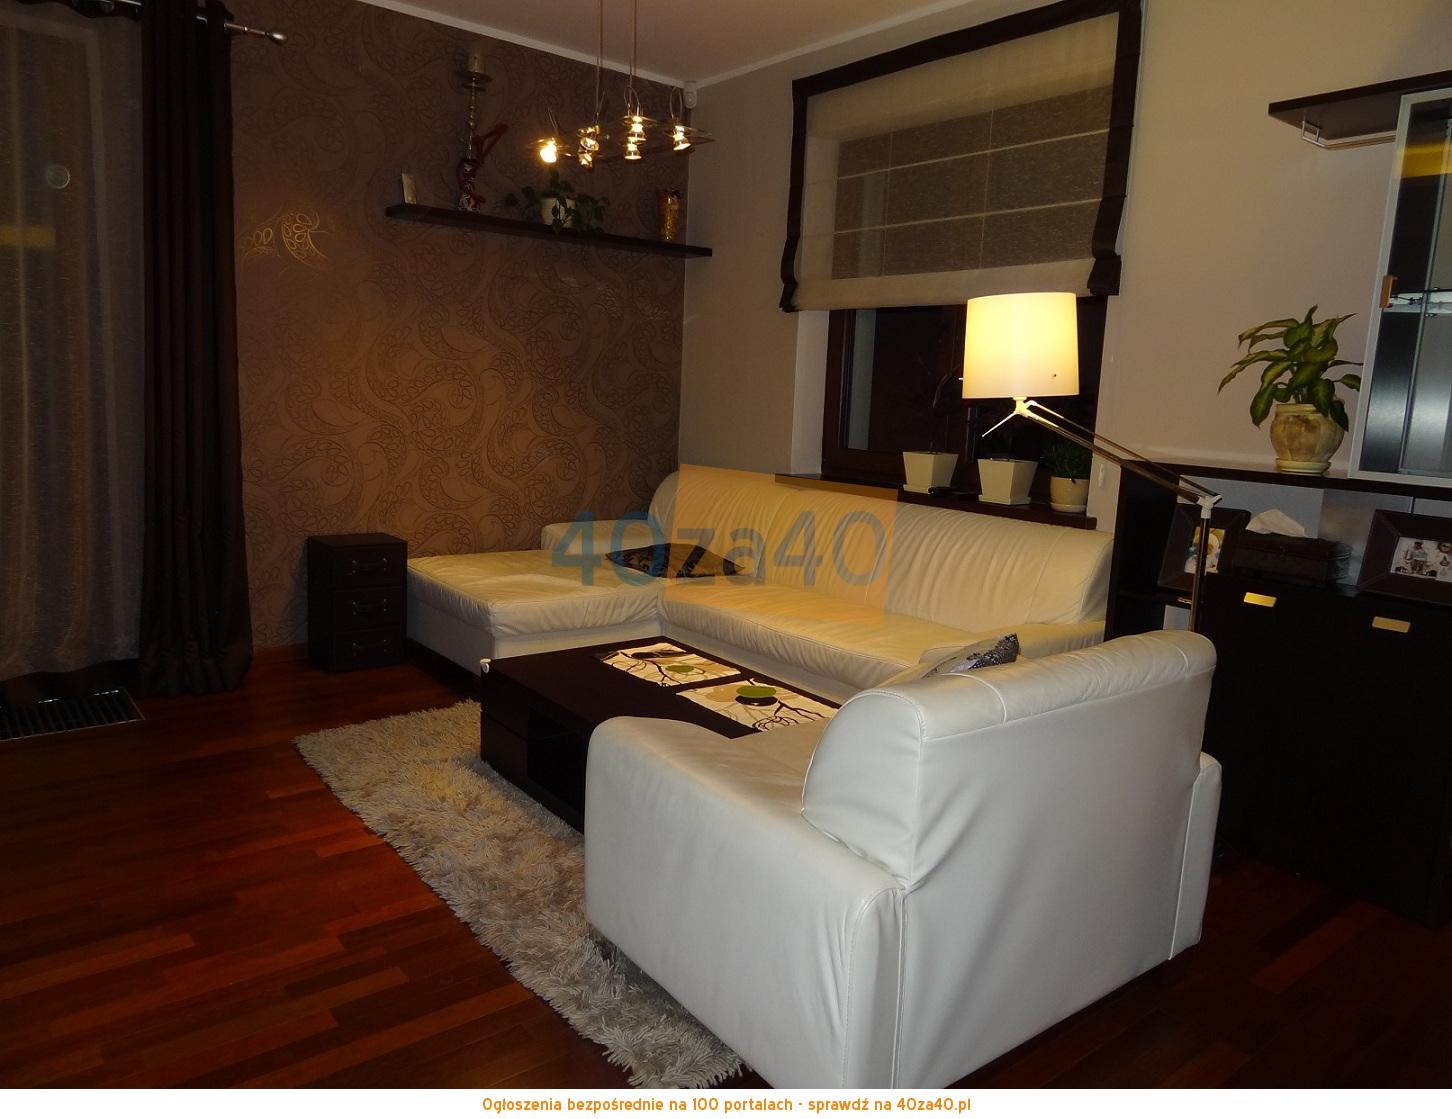 Dom na sprzedaż, powierzchnia: 200 m2, pokoje: 5, cena: 570 000,00 PLN, Załuski, kontakt: 609745054